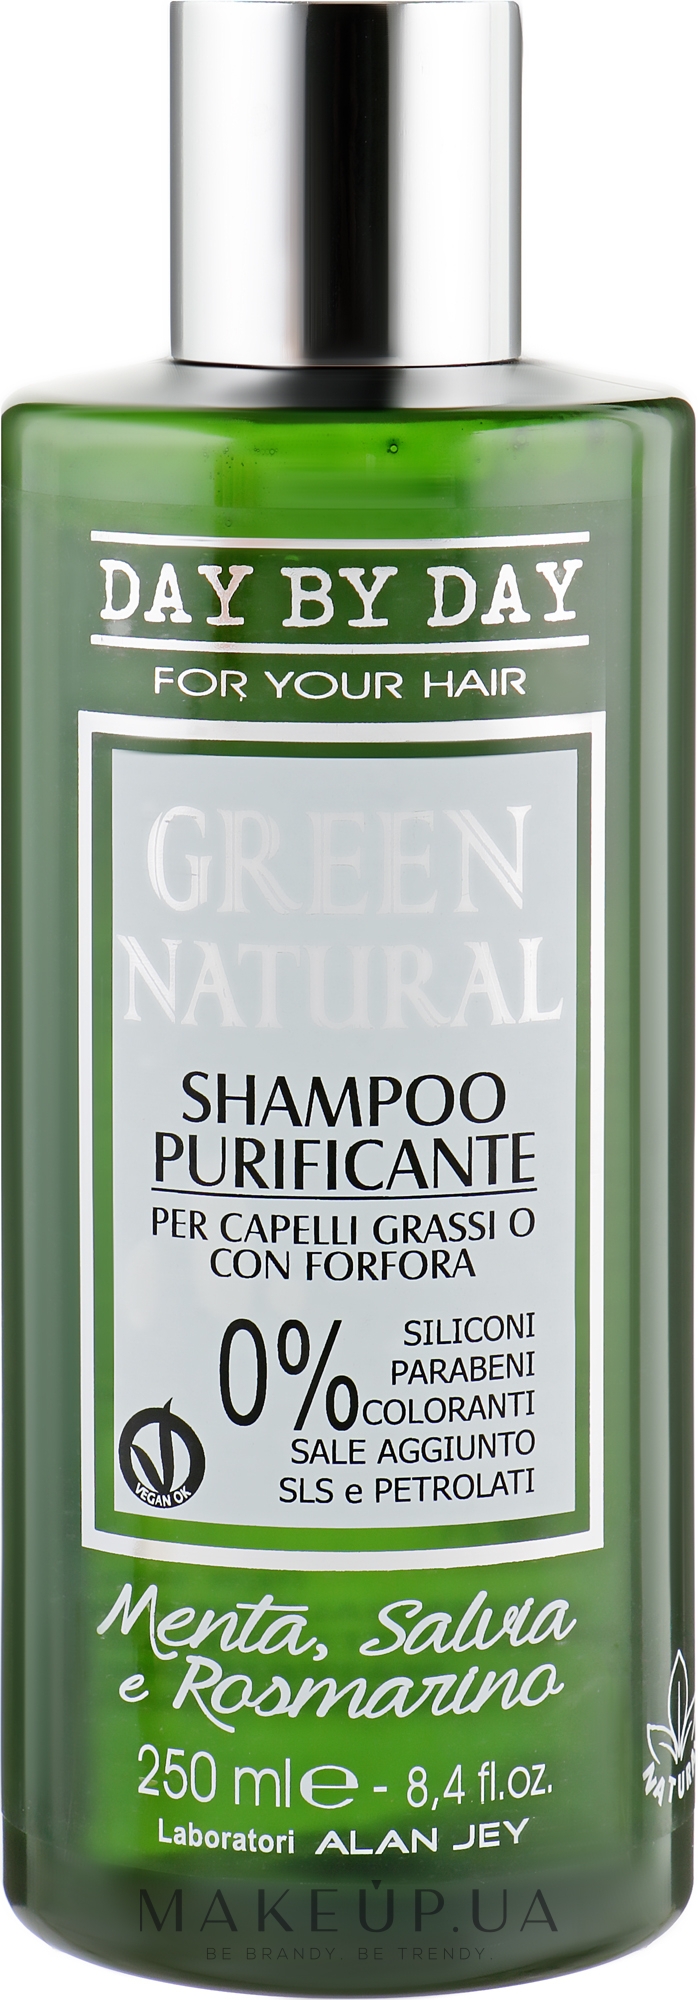 Шампунь очищающий для жирных волос и волос с жирной перхотью - Alan Jey Green Natural Shampoo — фото 250ml